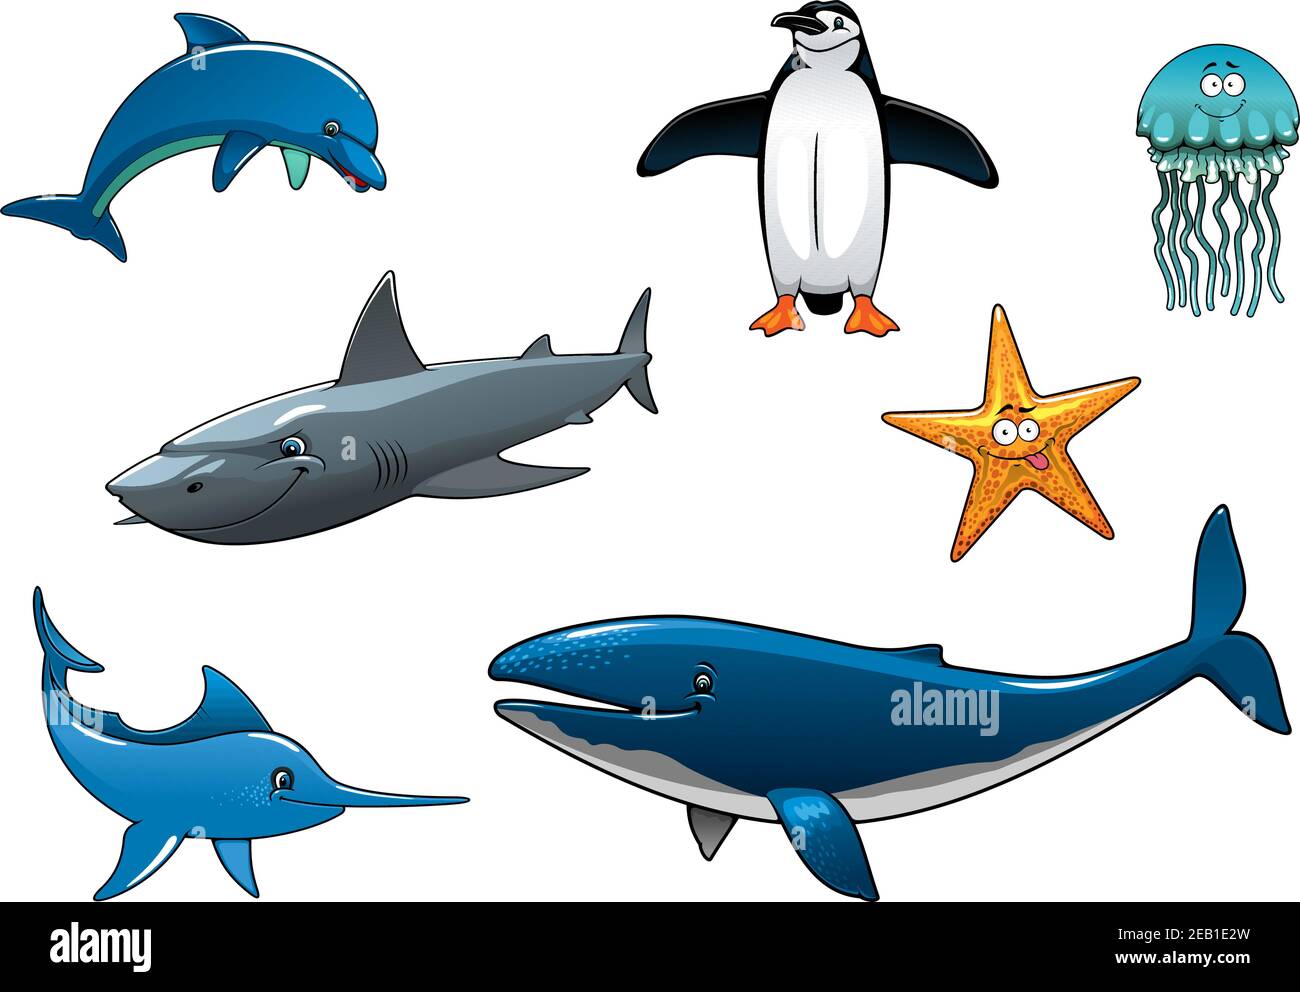 Marine Tierwelt farbige Tierfiguren in Vektor Darstellung eines Delphins, Pinguin, Hai, Marlin, Wal, Quallen und Seesterne Stock Vektor